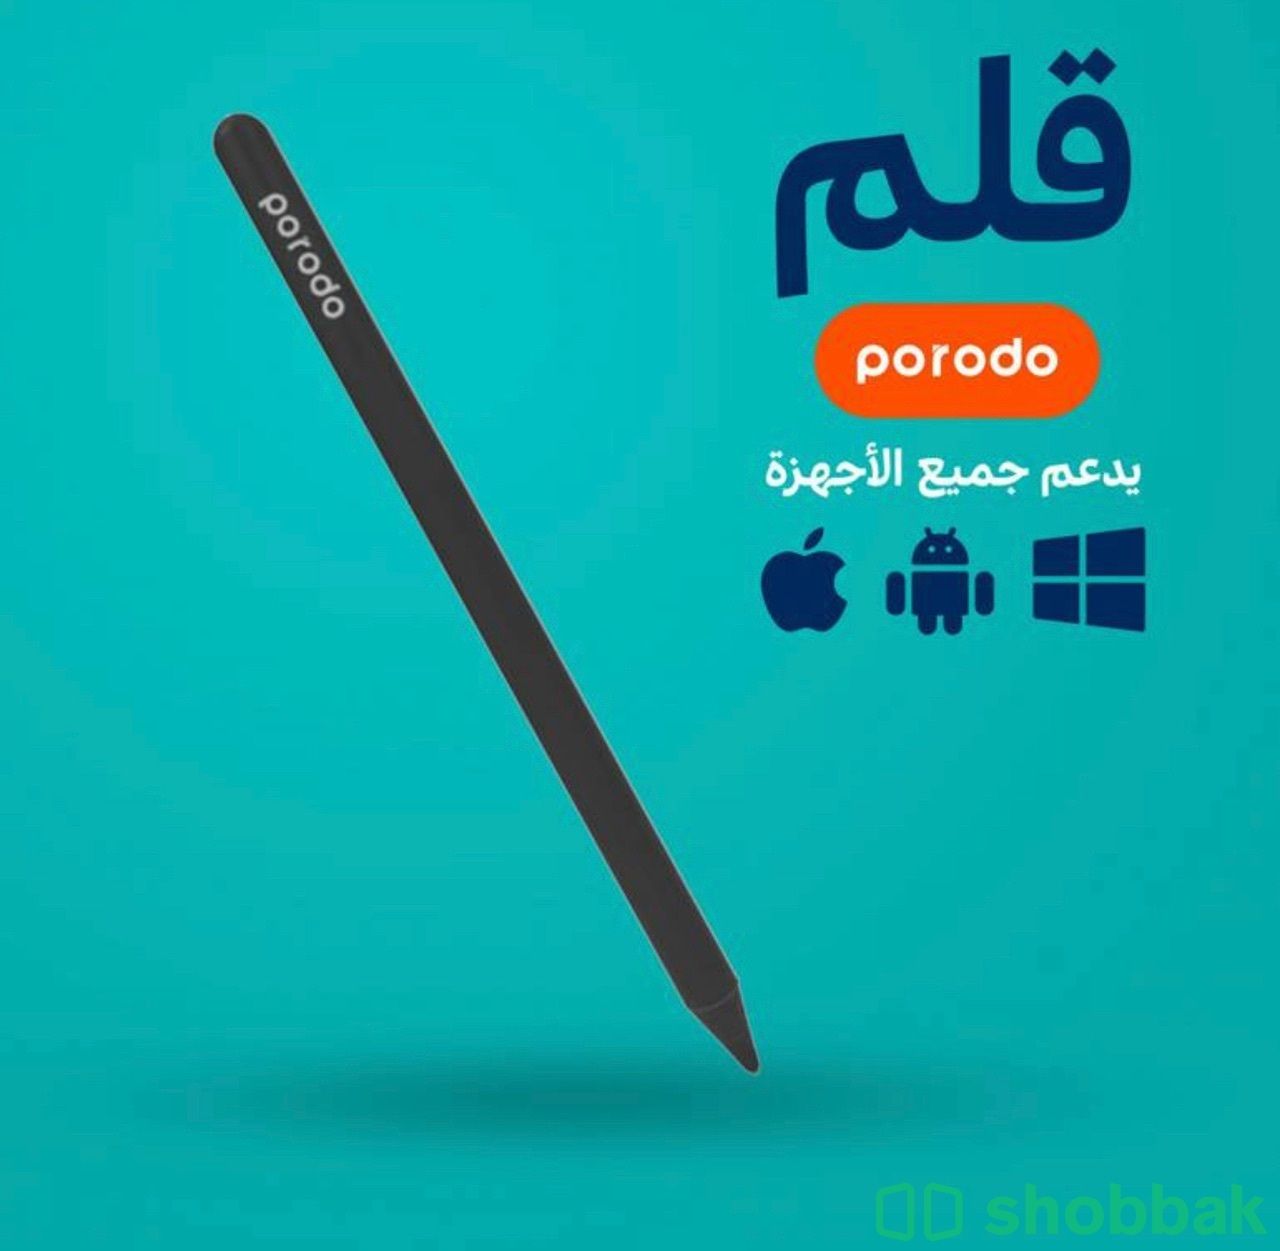 قلم porodo - اسود  Shobbak Saudi Arabia